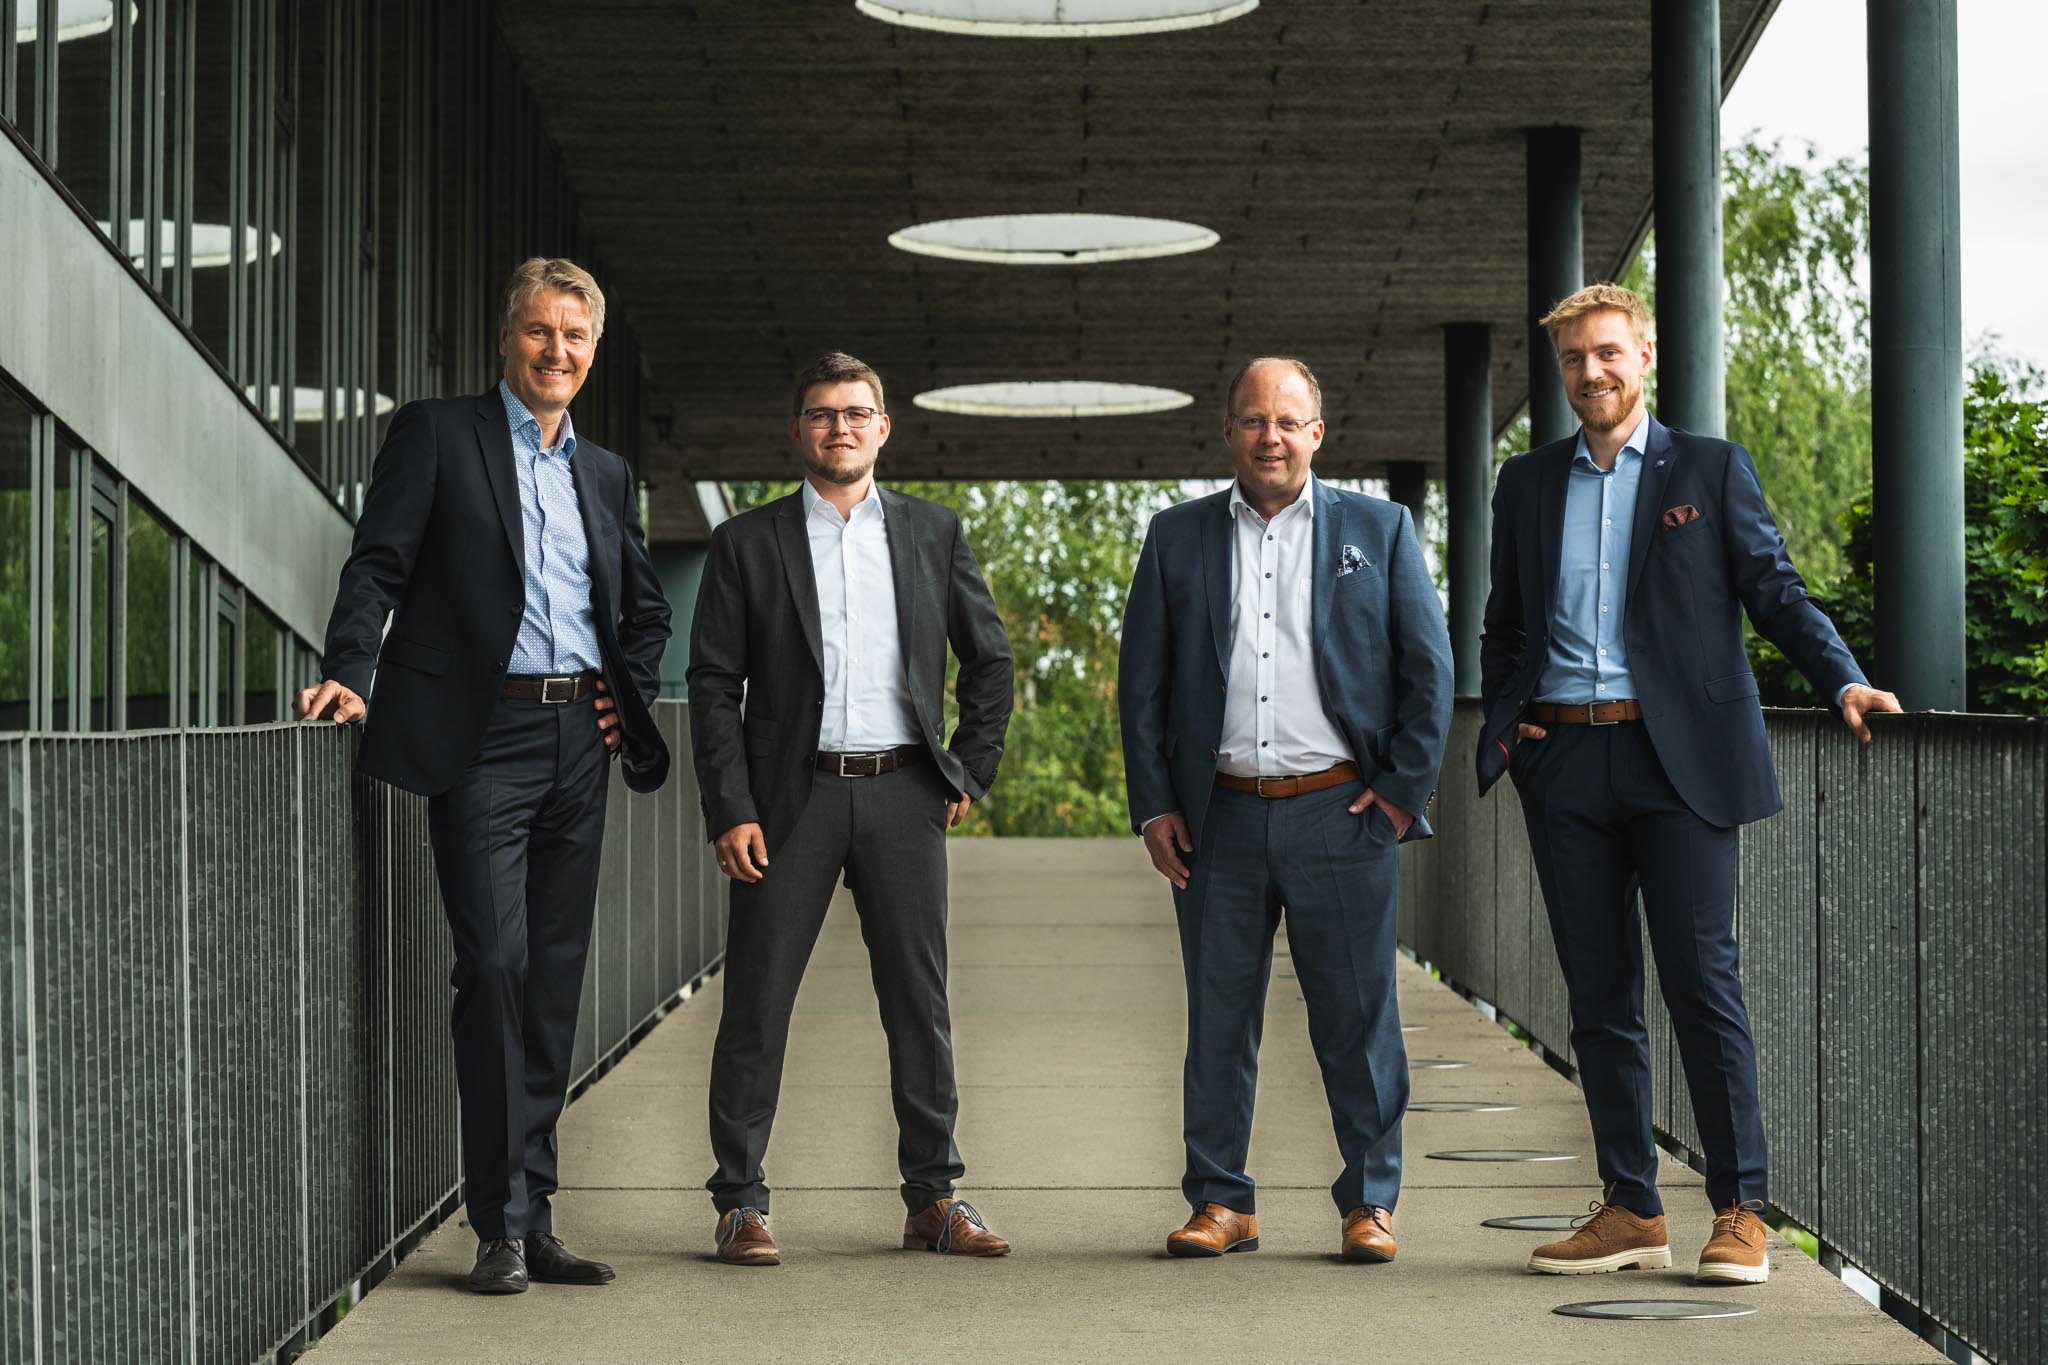 Foto: Die client4u-Eigentümer: Gerald Hübsch, Patrick Schoiswohl, Markus Gösweiner, Johannes Kainz